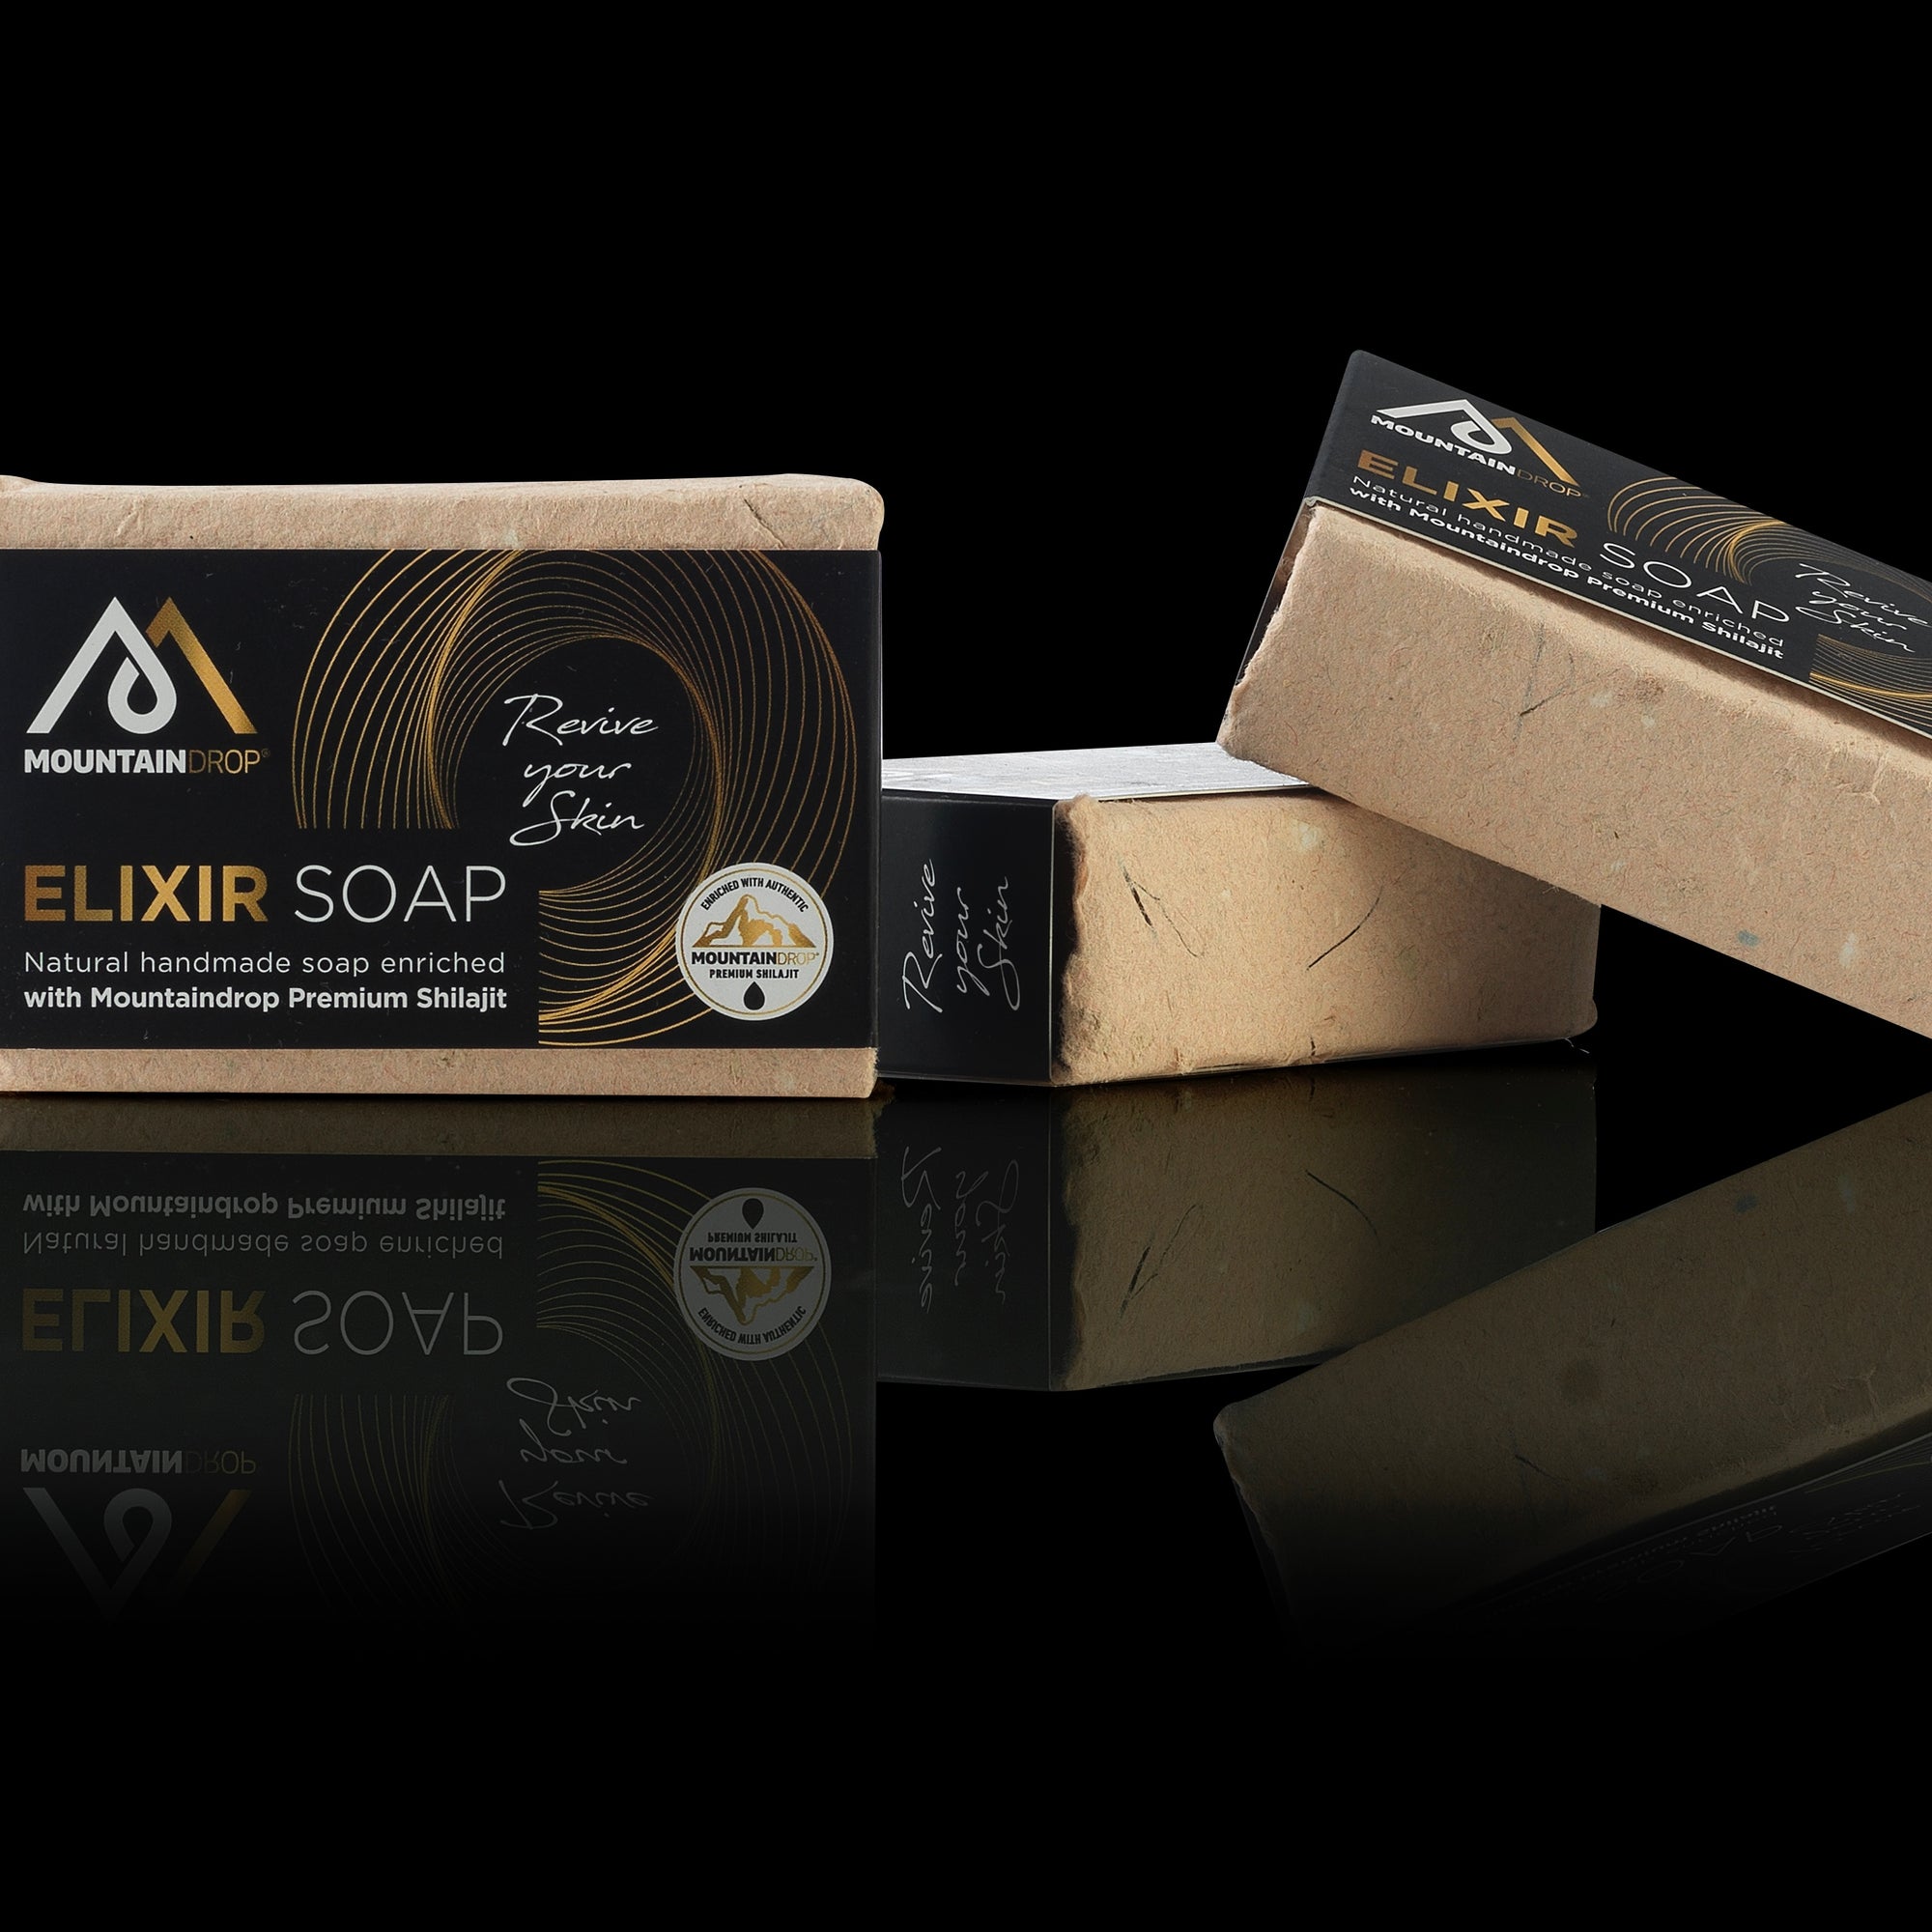 Mountaindrop ELIXIR SOAP - Sapone elisir artigianale a freddo con Shilajit, Ricino e Olio di Zucca - 100g